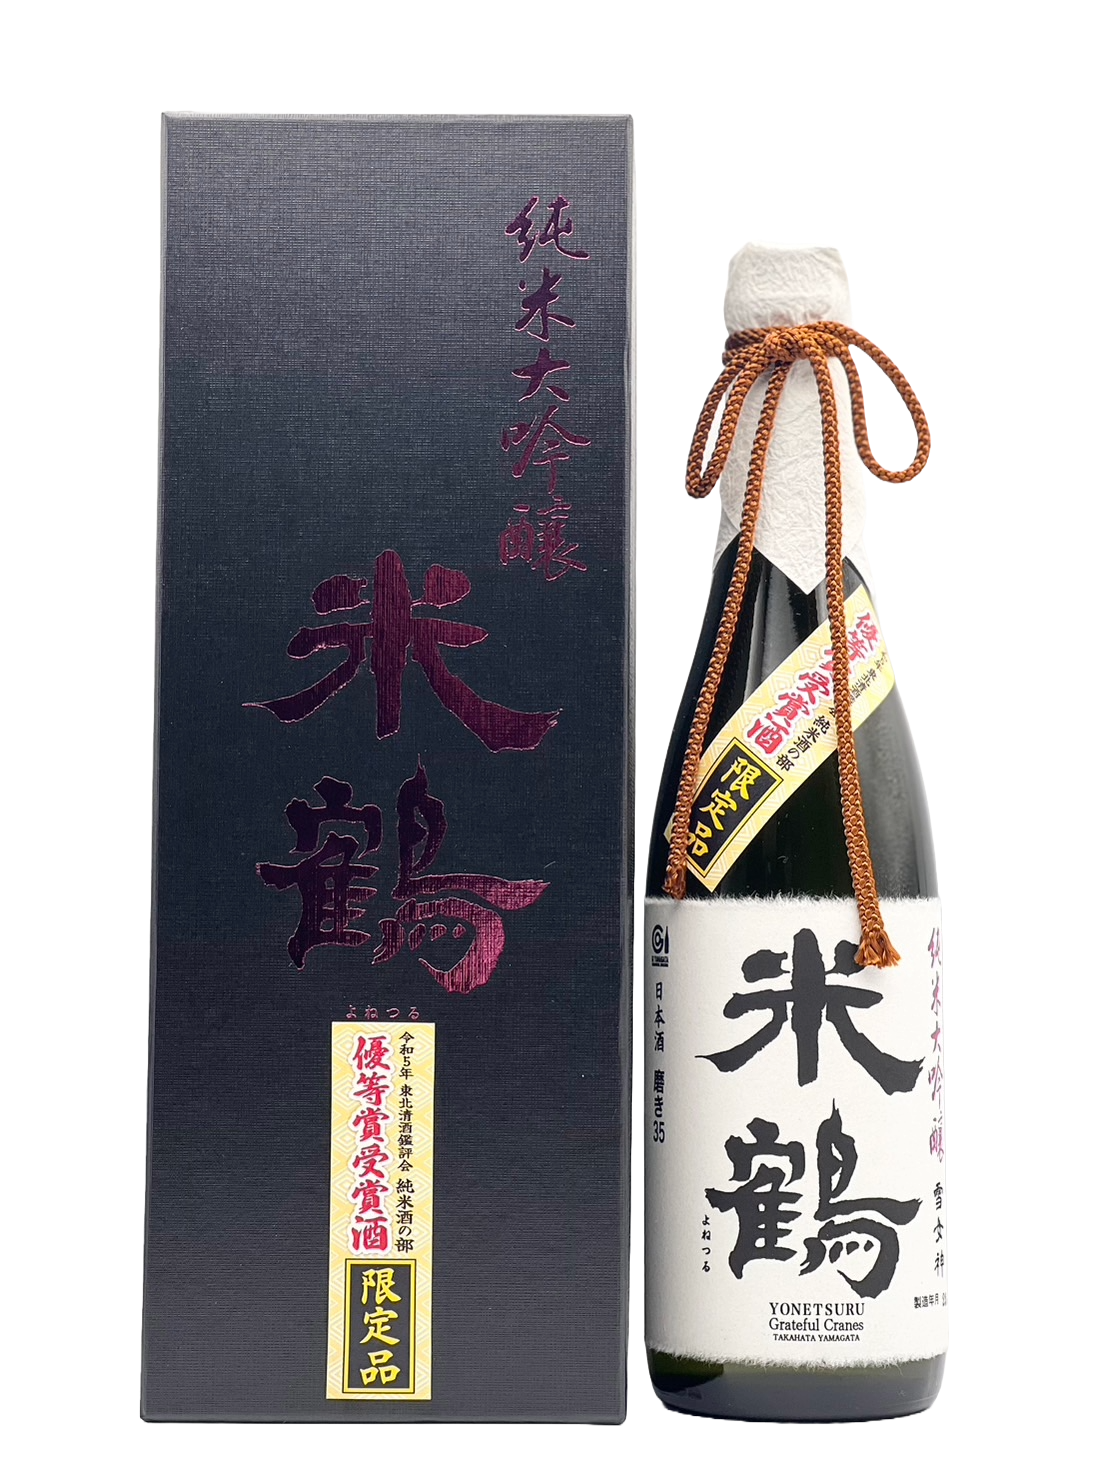 米鶴 純米大吟醸 雪女神 磨き35 優等賞受賞酒